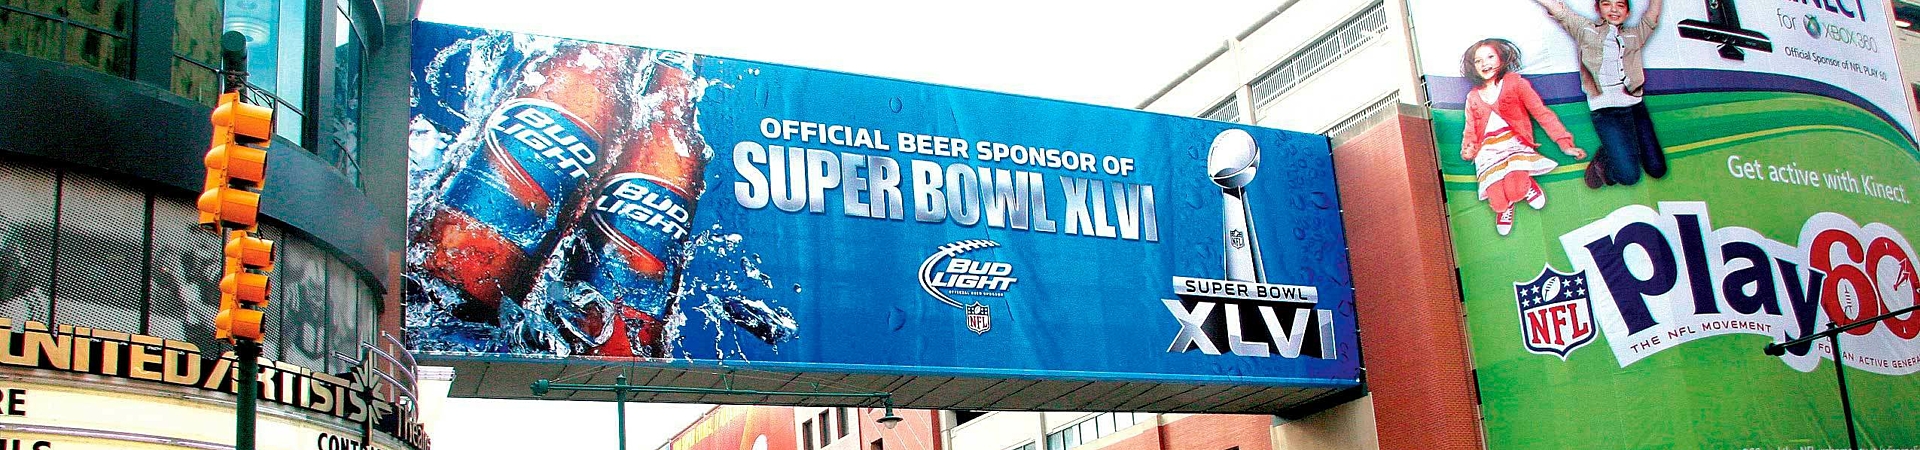 Mesh Bud Light Super Bowl advertising banner.